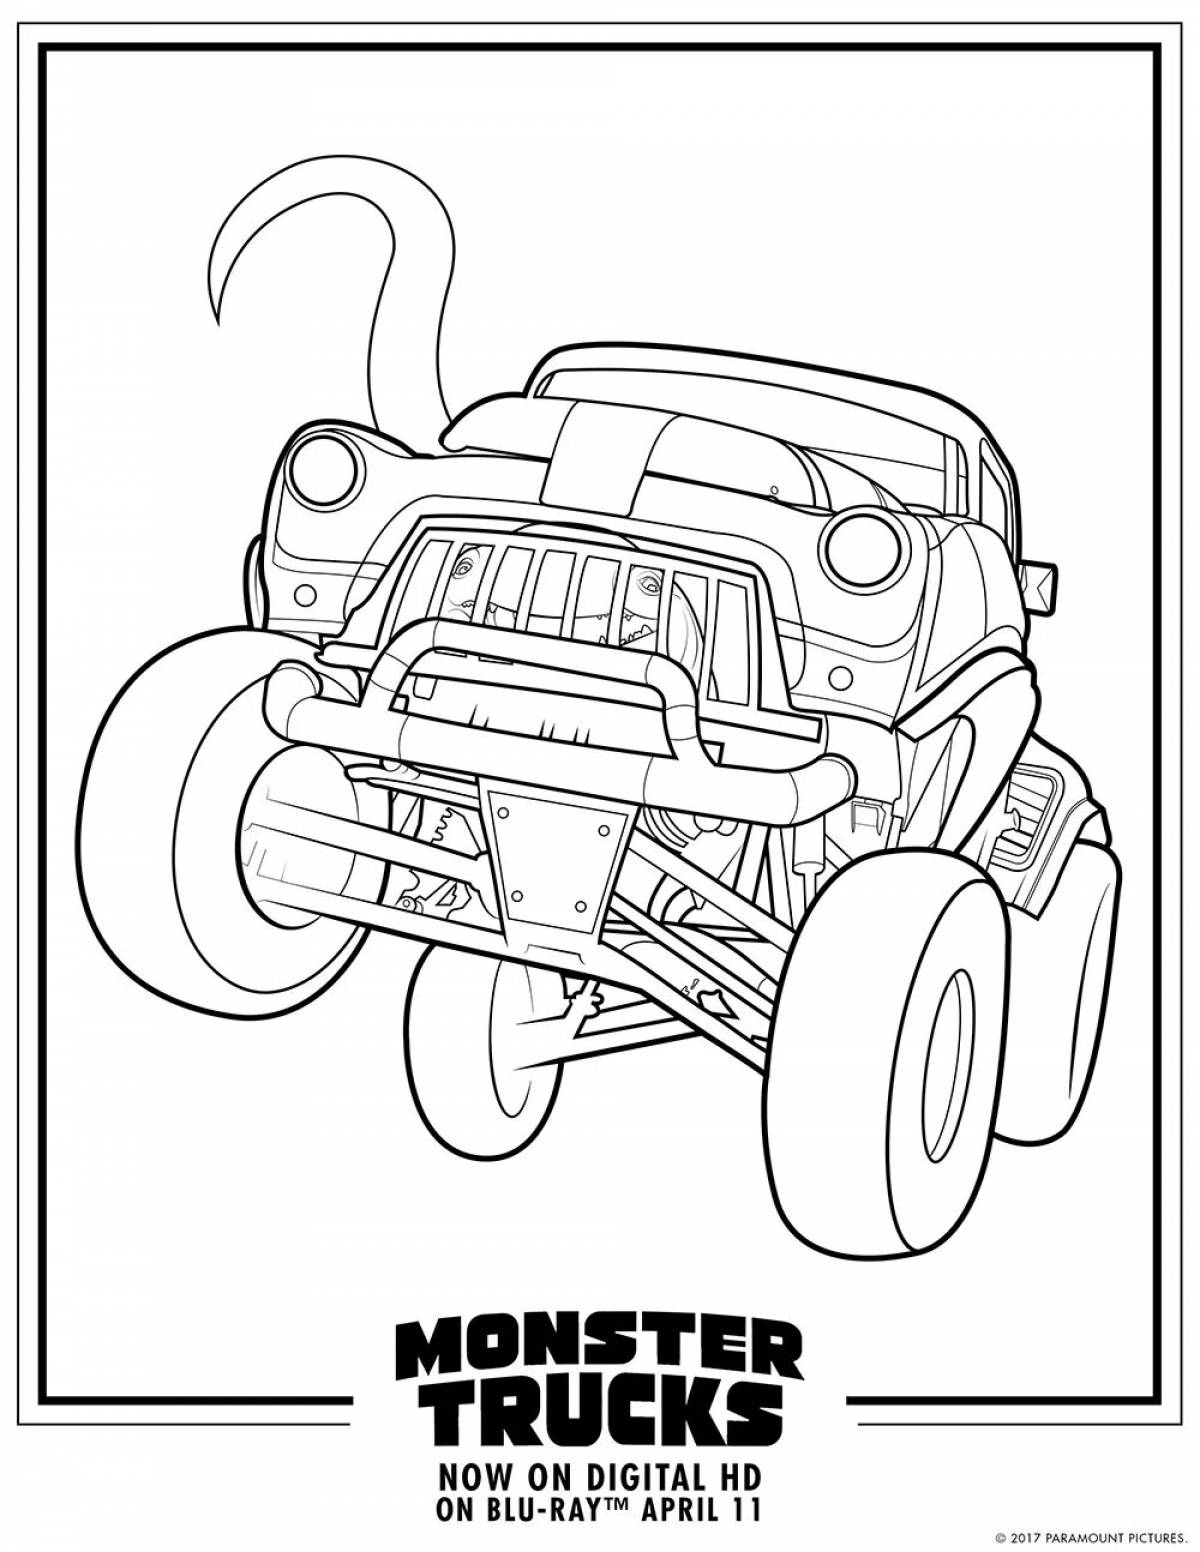 Shark monster truck #10